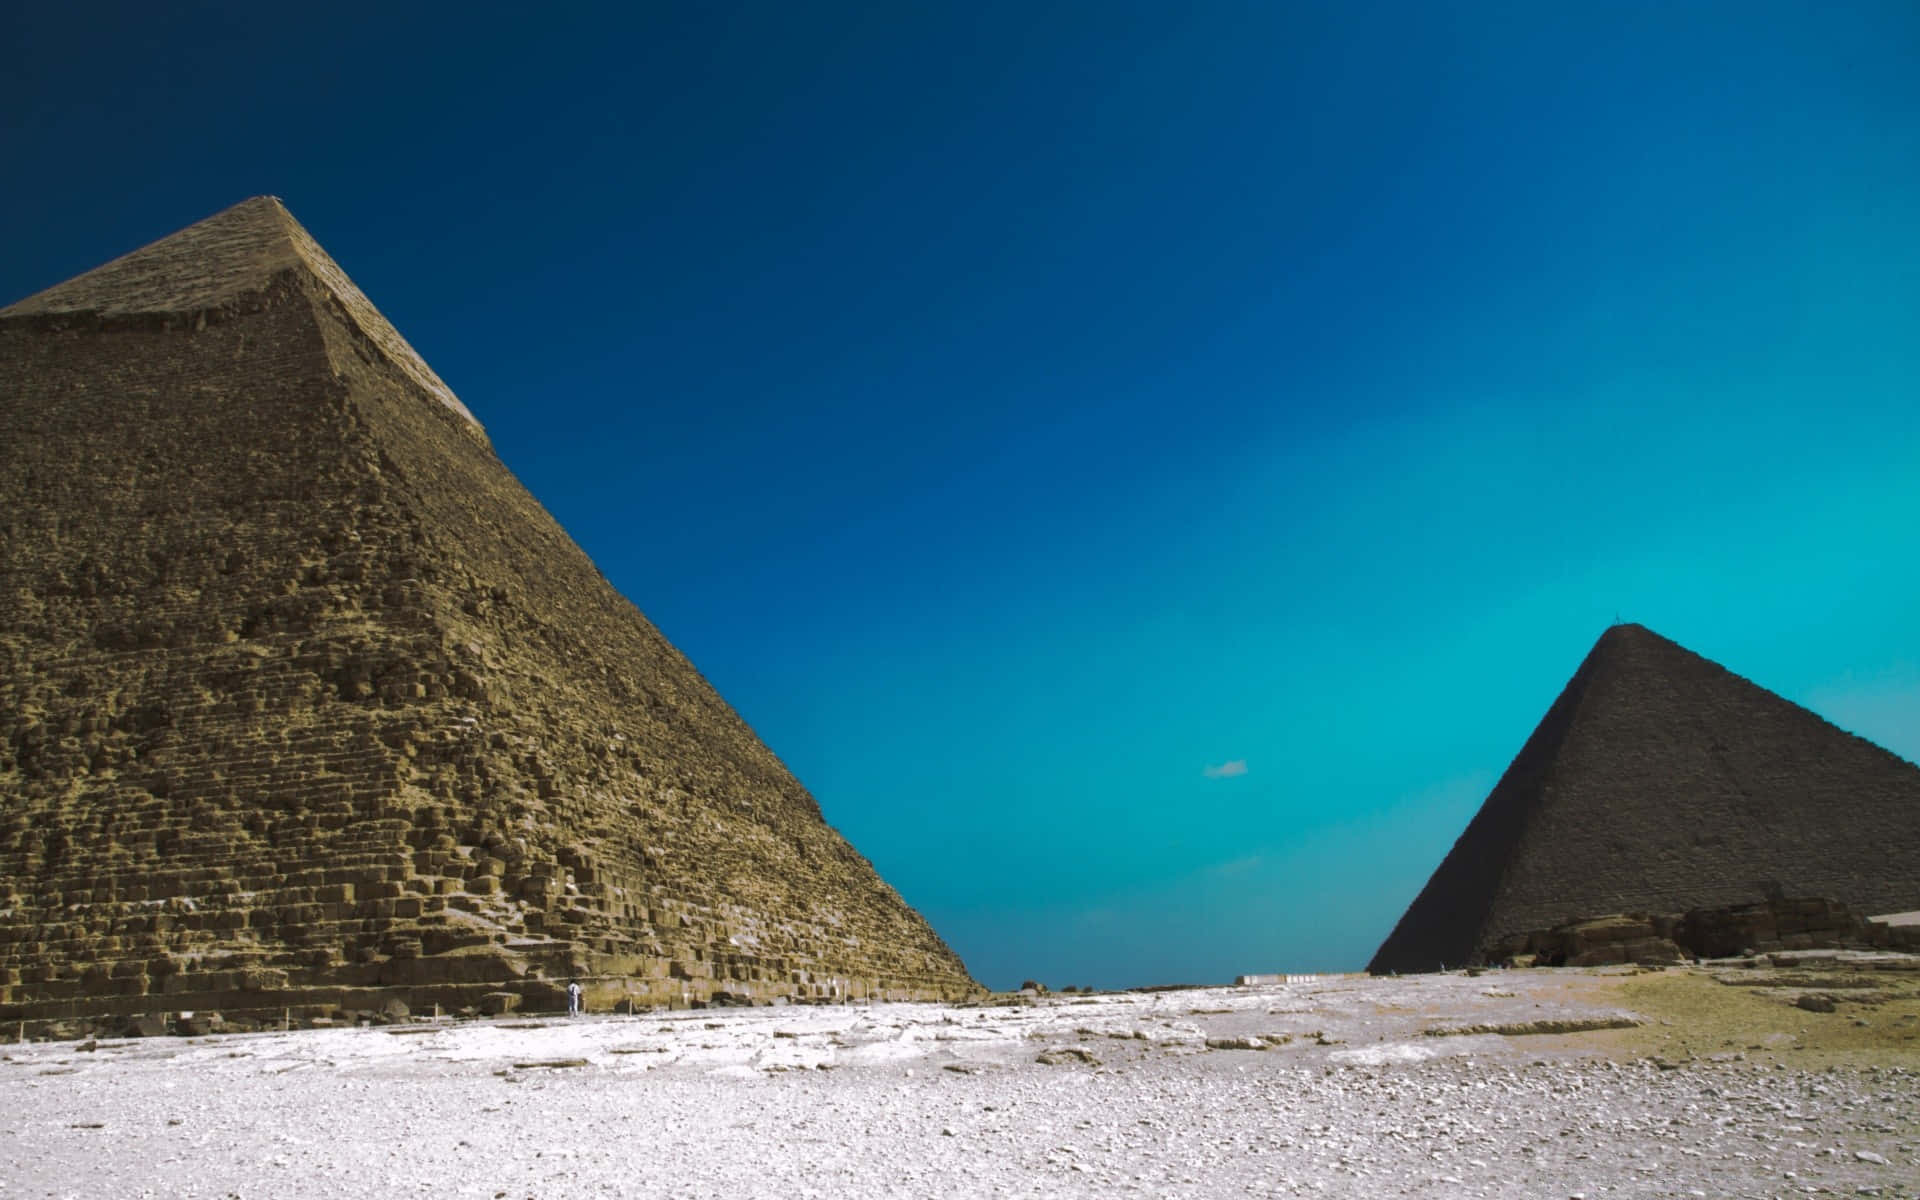 Cieloimpresionante Y Las Pirámides De Giza Fondo de pantalla